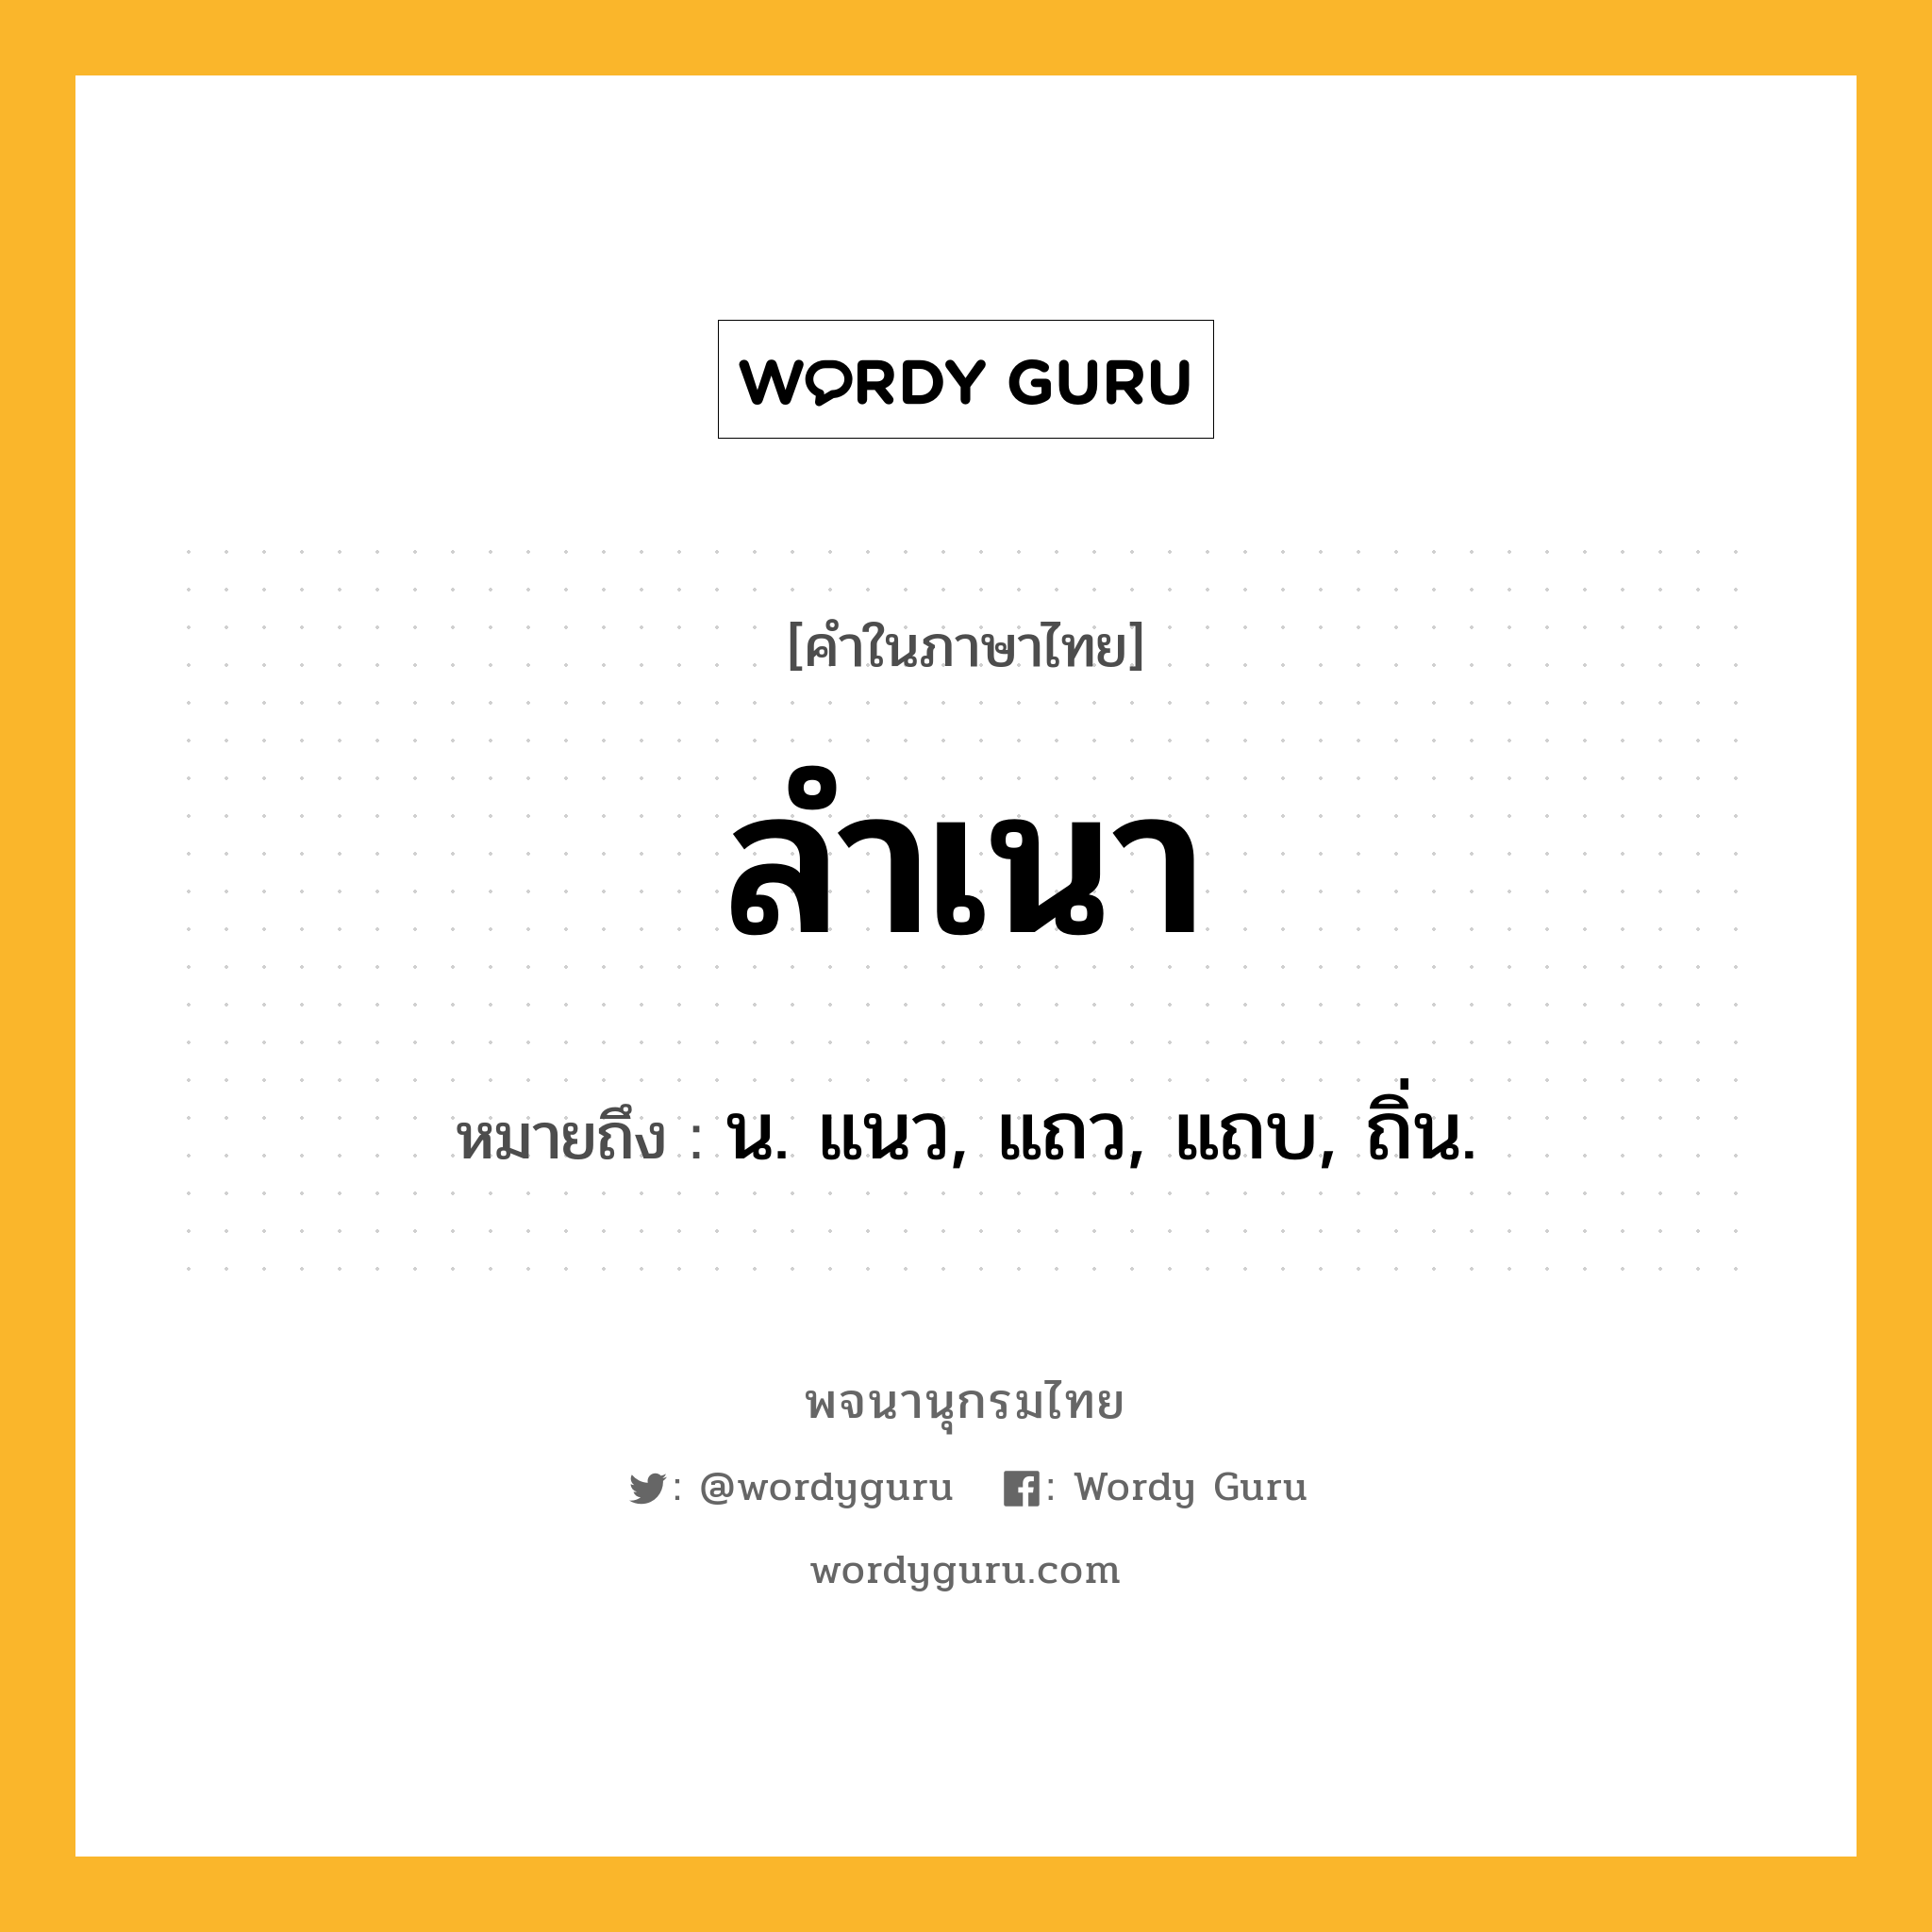 ลำเนา ความหมาย หมายถึงอะไร?, คำในภาษาไทย ลำเนา หมายถึง น. แนว, แถว, แถบ, ถิ่น.